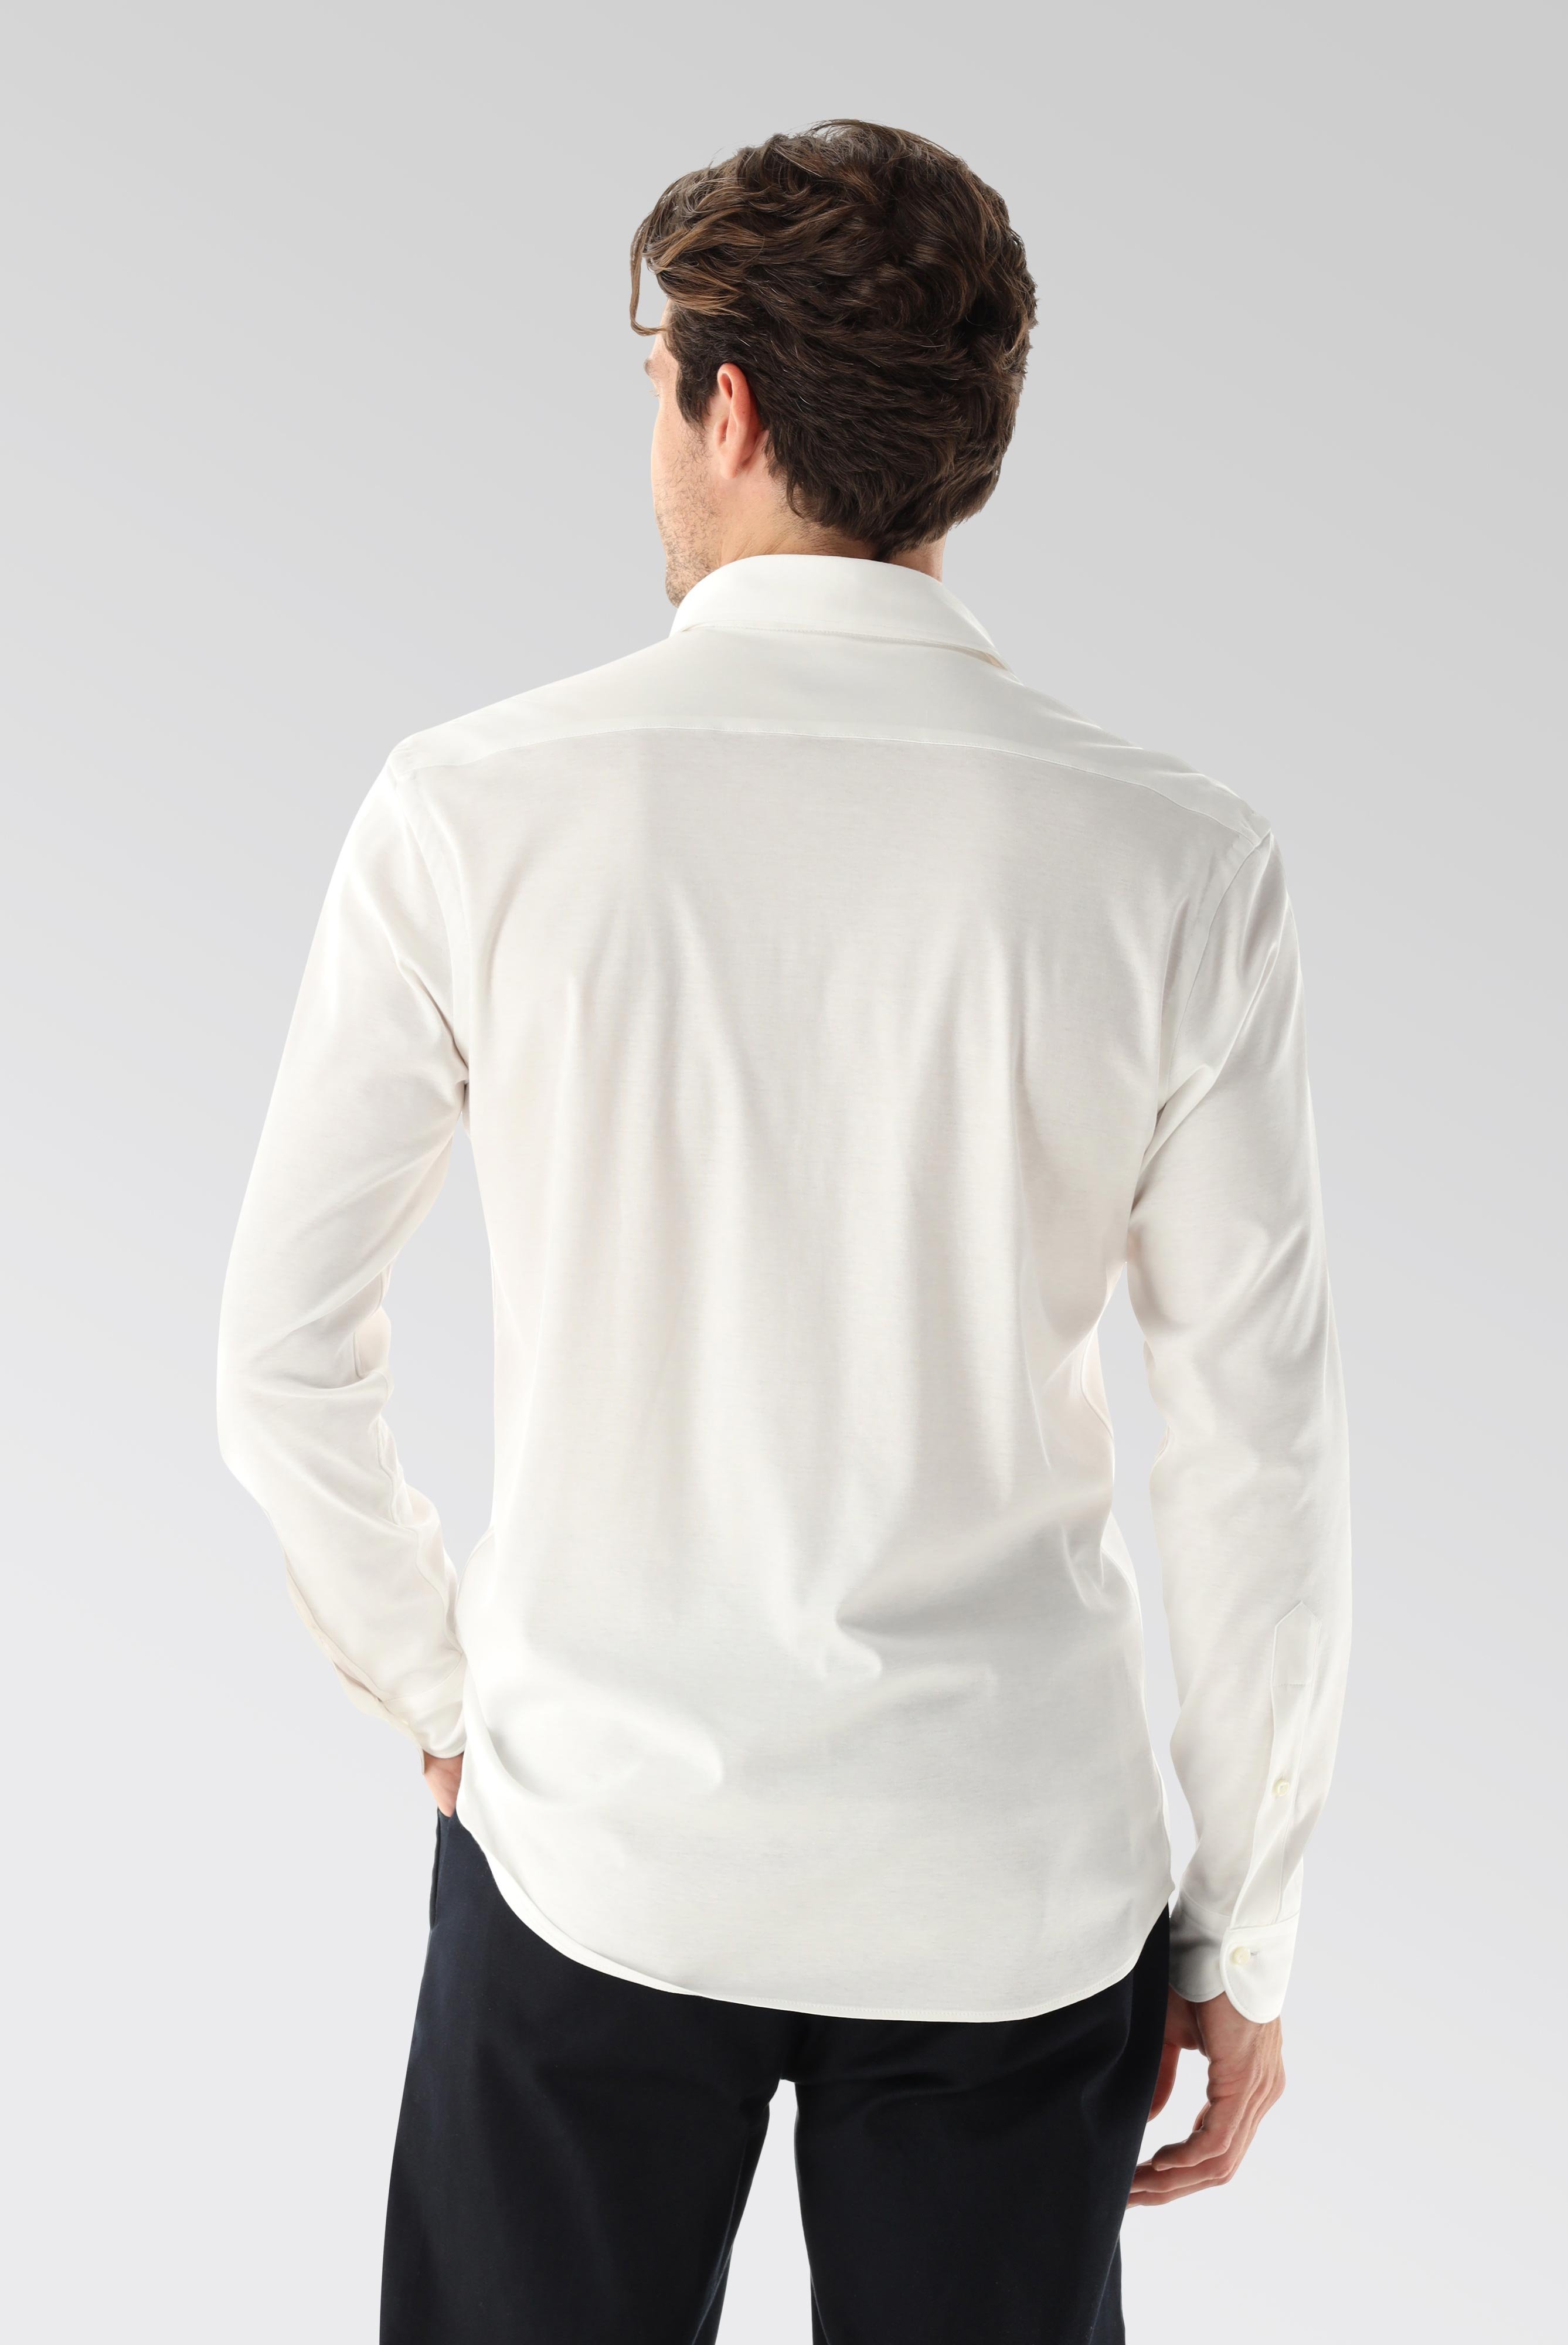 Bügelleichte Hemden+Jersey Hemd mit glänzender Optik Tailor Fit+20.1683.UC.180031.000.X4L